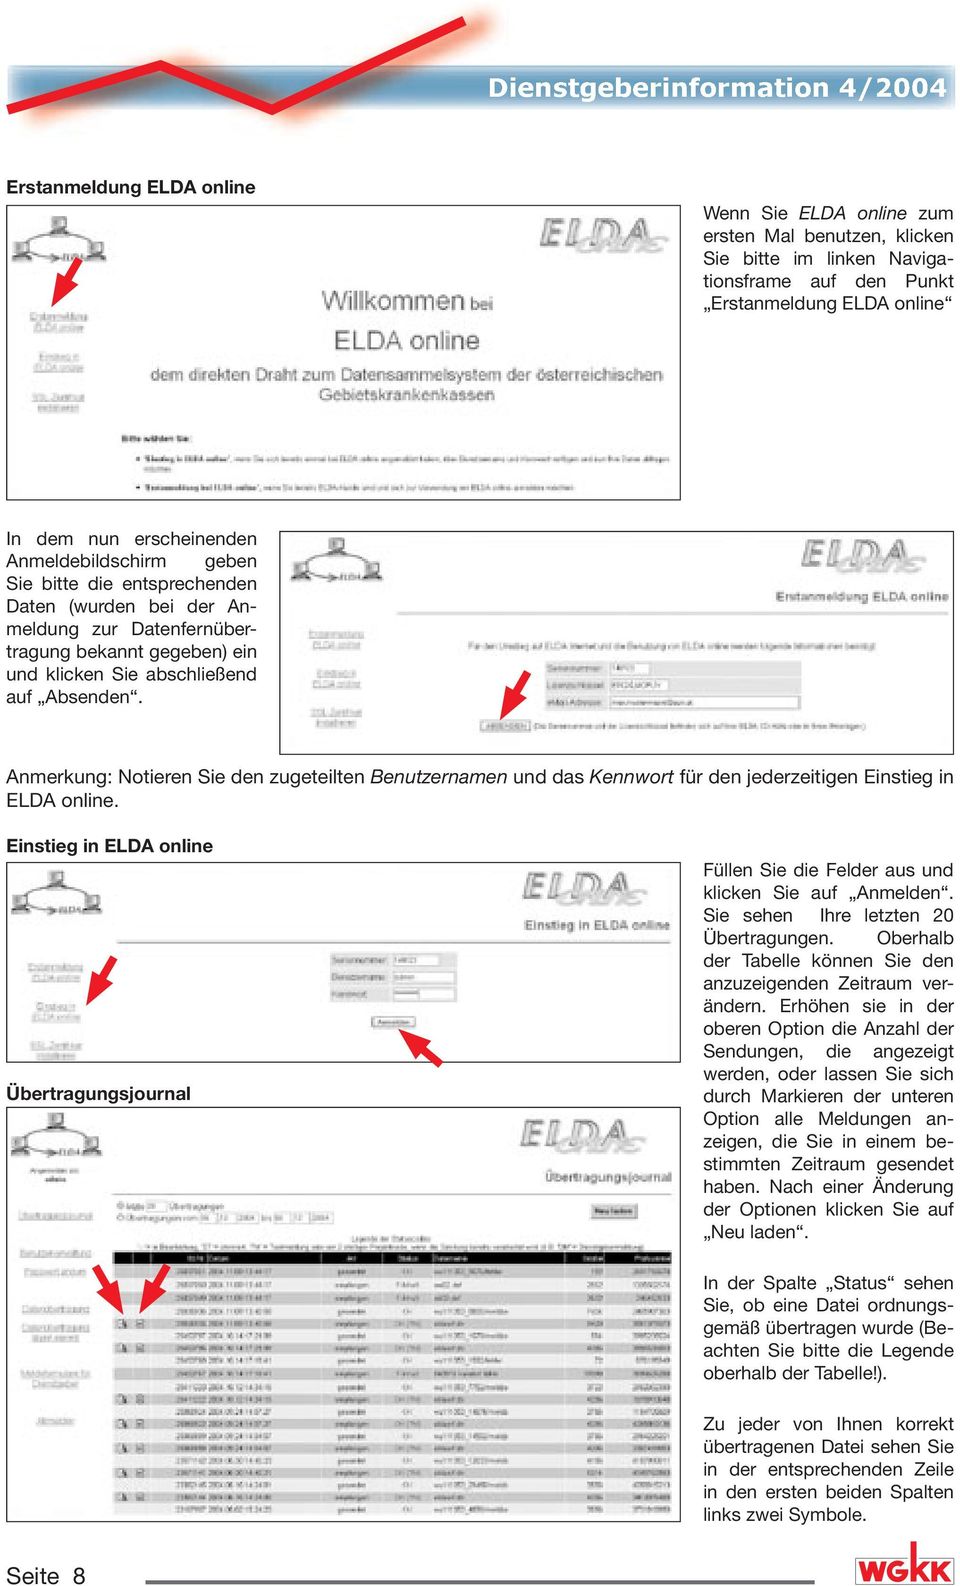 Anmerkung: Notieren Sie den zugeteilten Benutzernamen und das Kennwort für den jederzeitigen Einstieg in ELDA online.